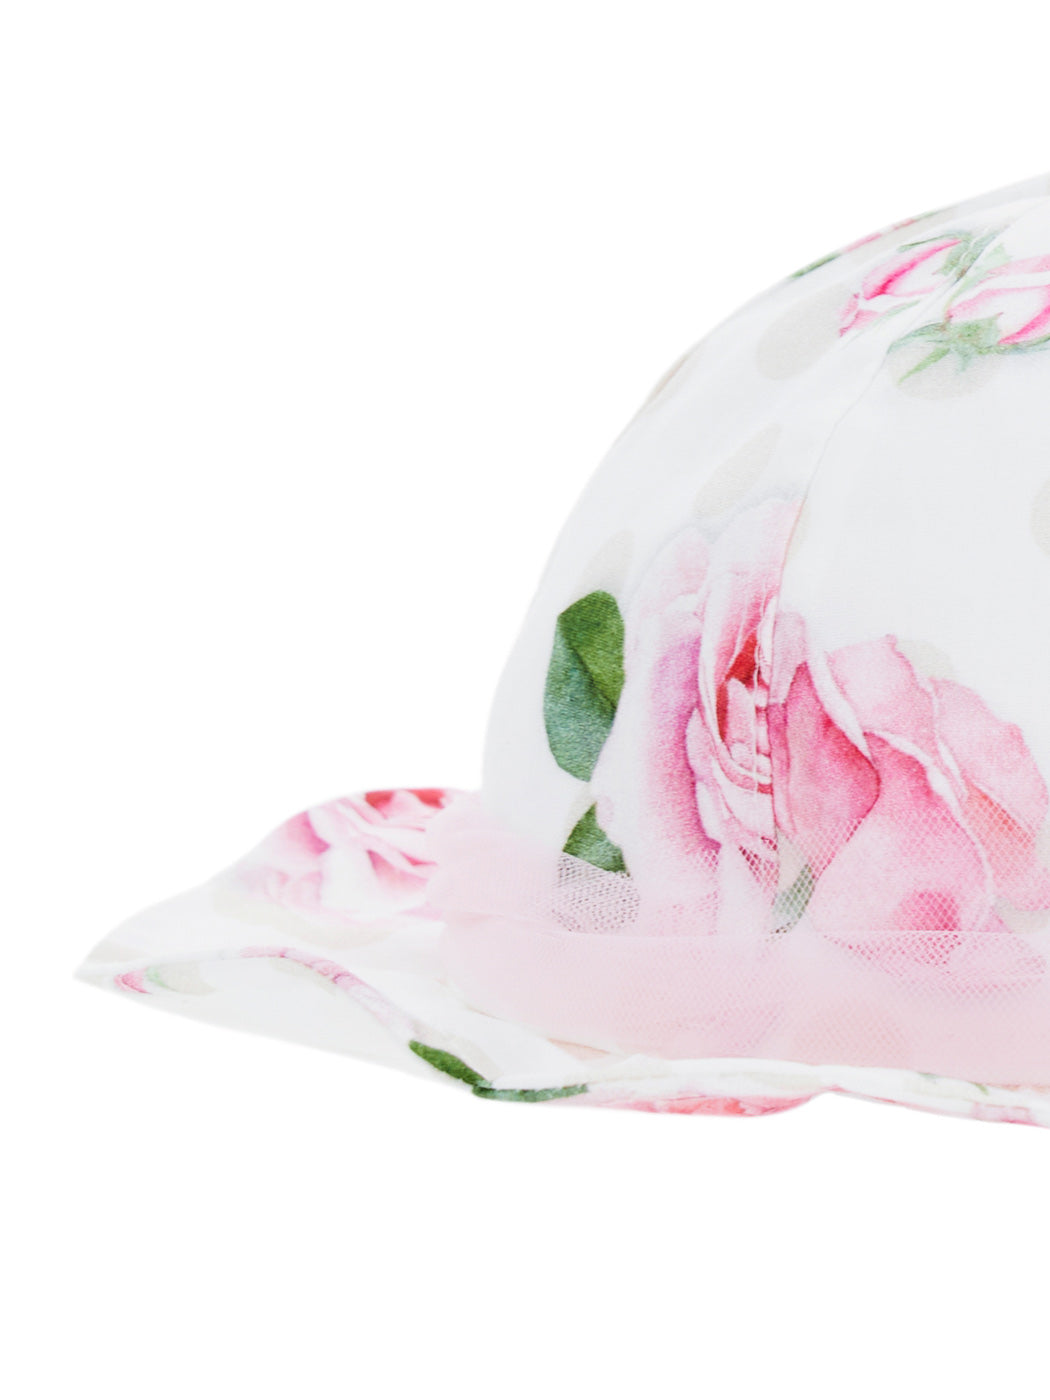 MONNALISA cotton bonnet with floral print